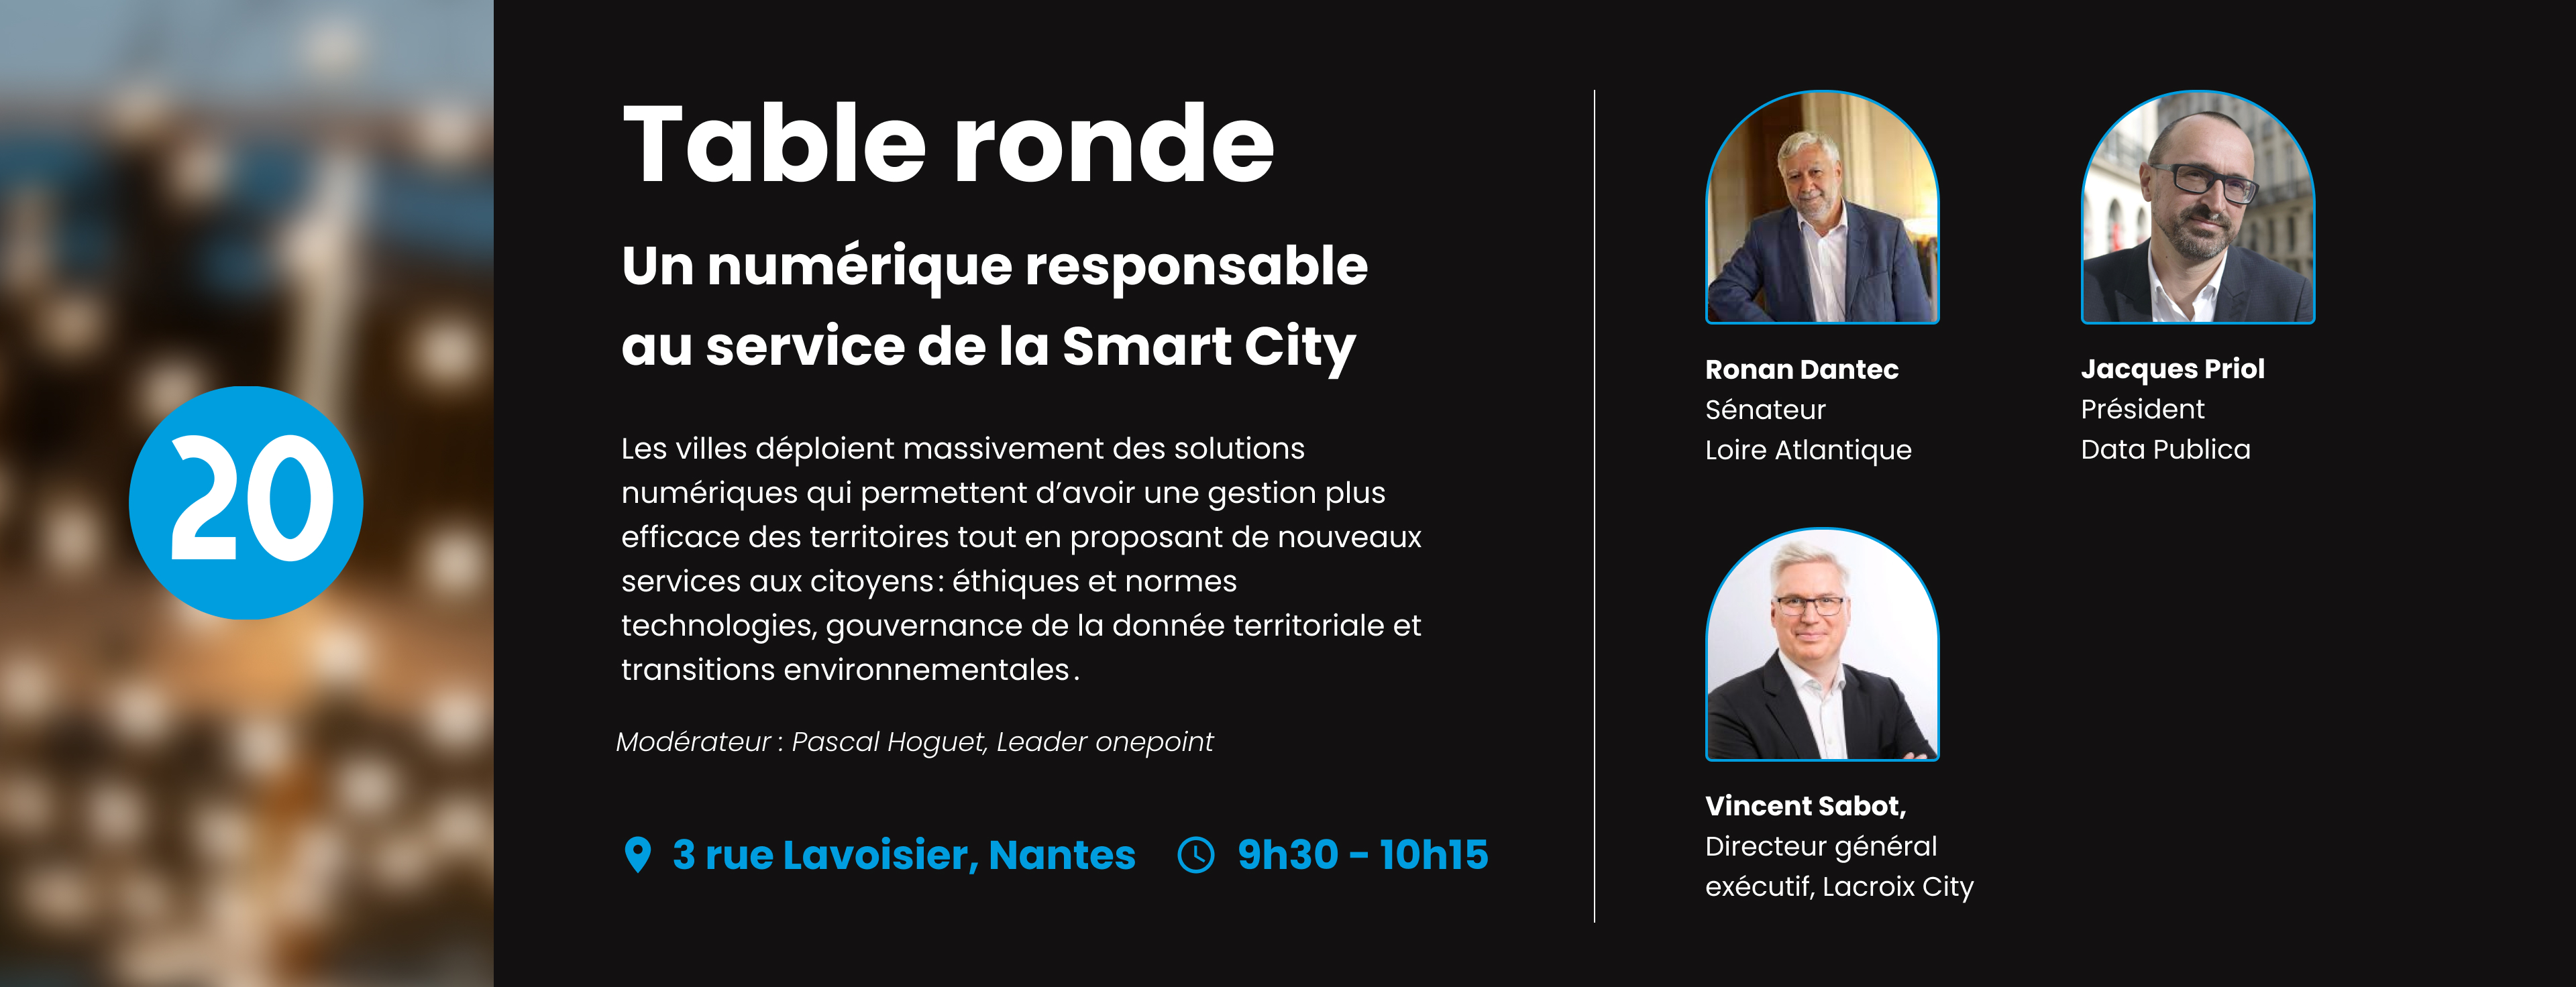 Image de la table ronde smart cities de l'inauguration onepoint à Nantes